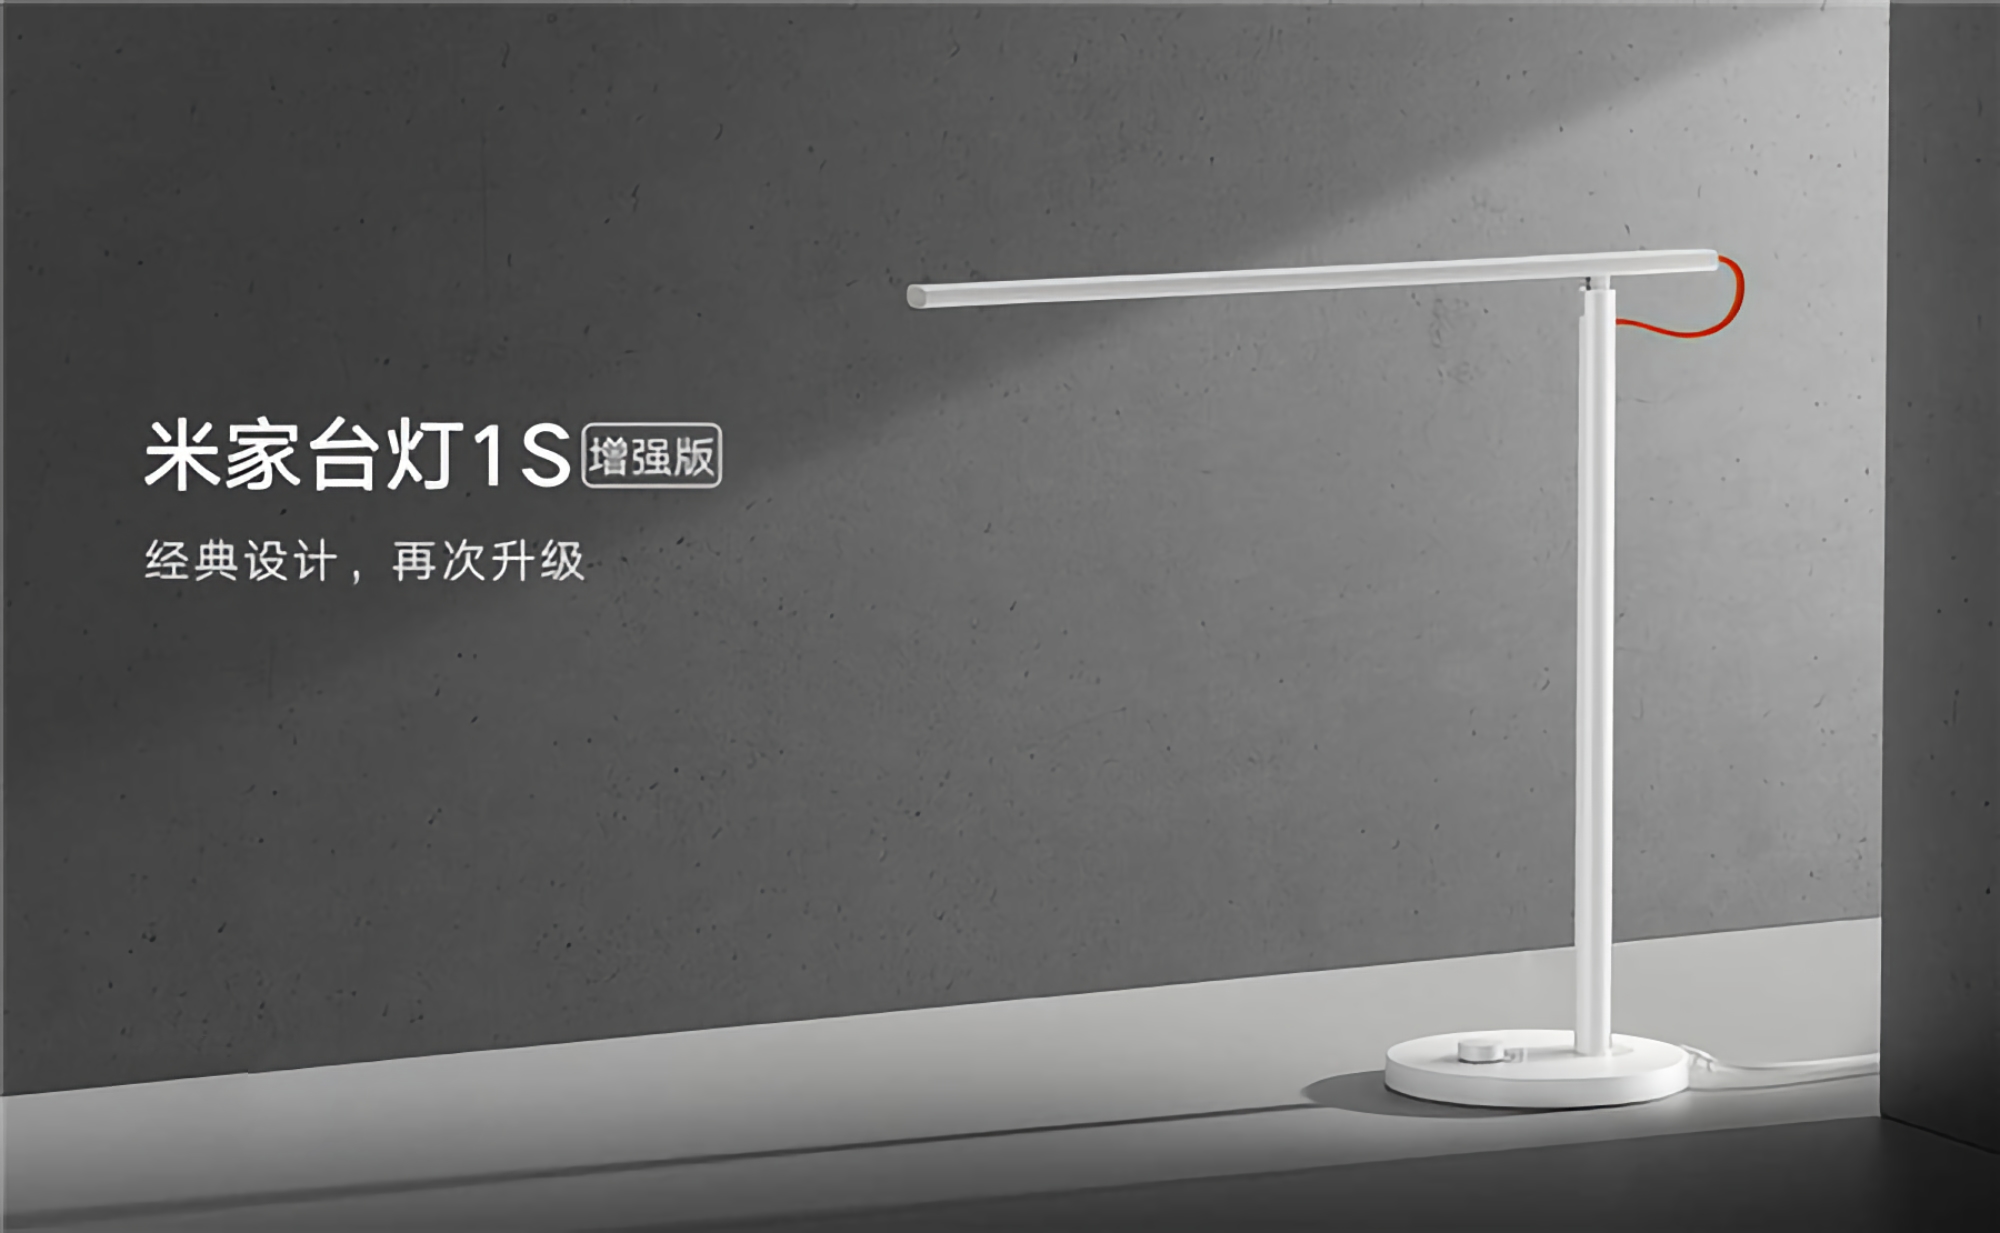 Xiaomi presentó una lámpara inteligente MiJia Desk Lamp 1S Enhanced con un nuevo módulo LED y un precio de $ 30